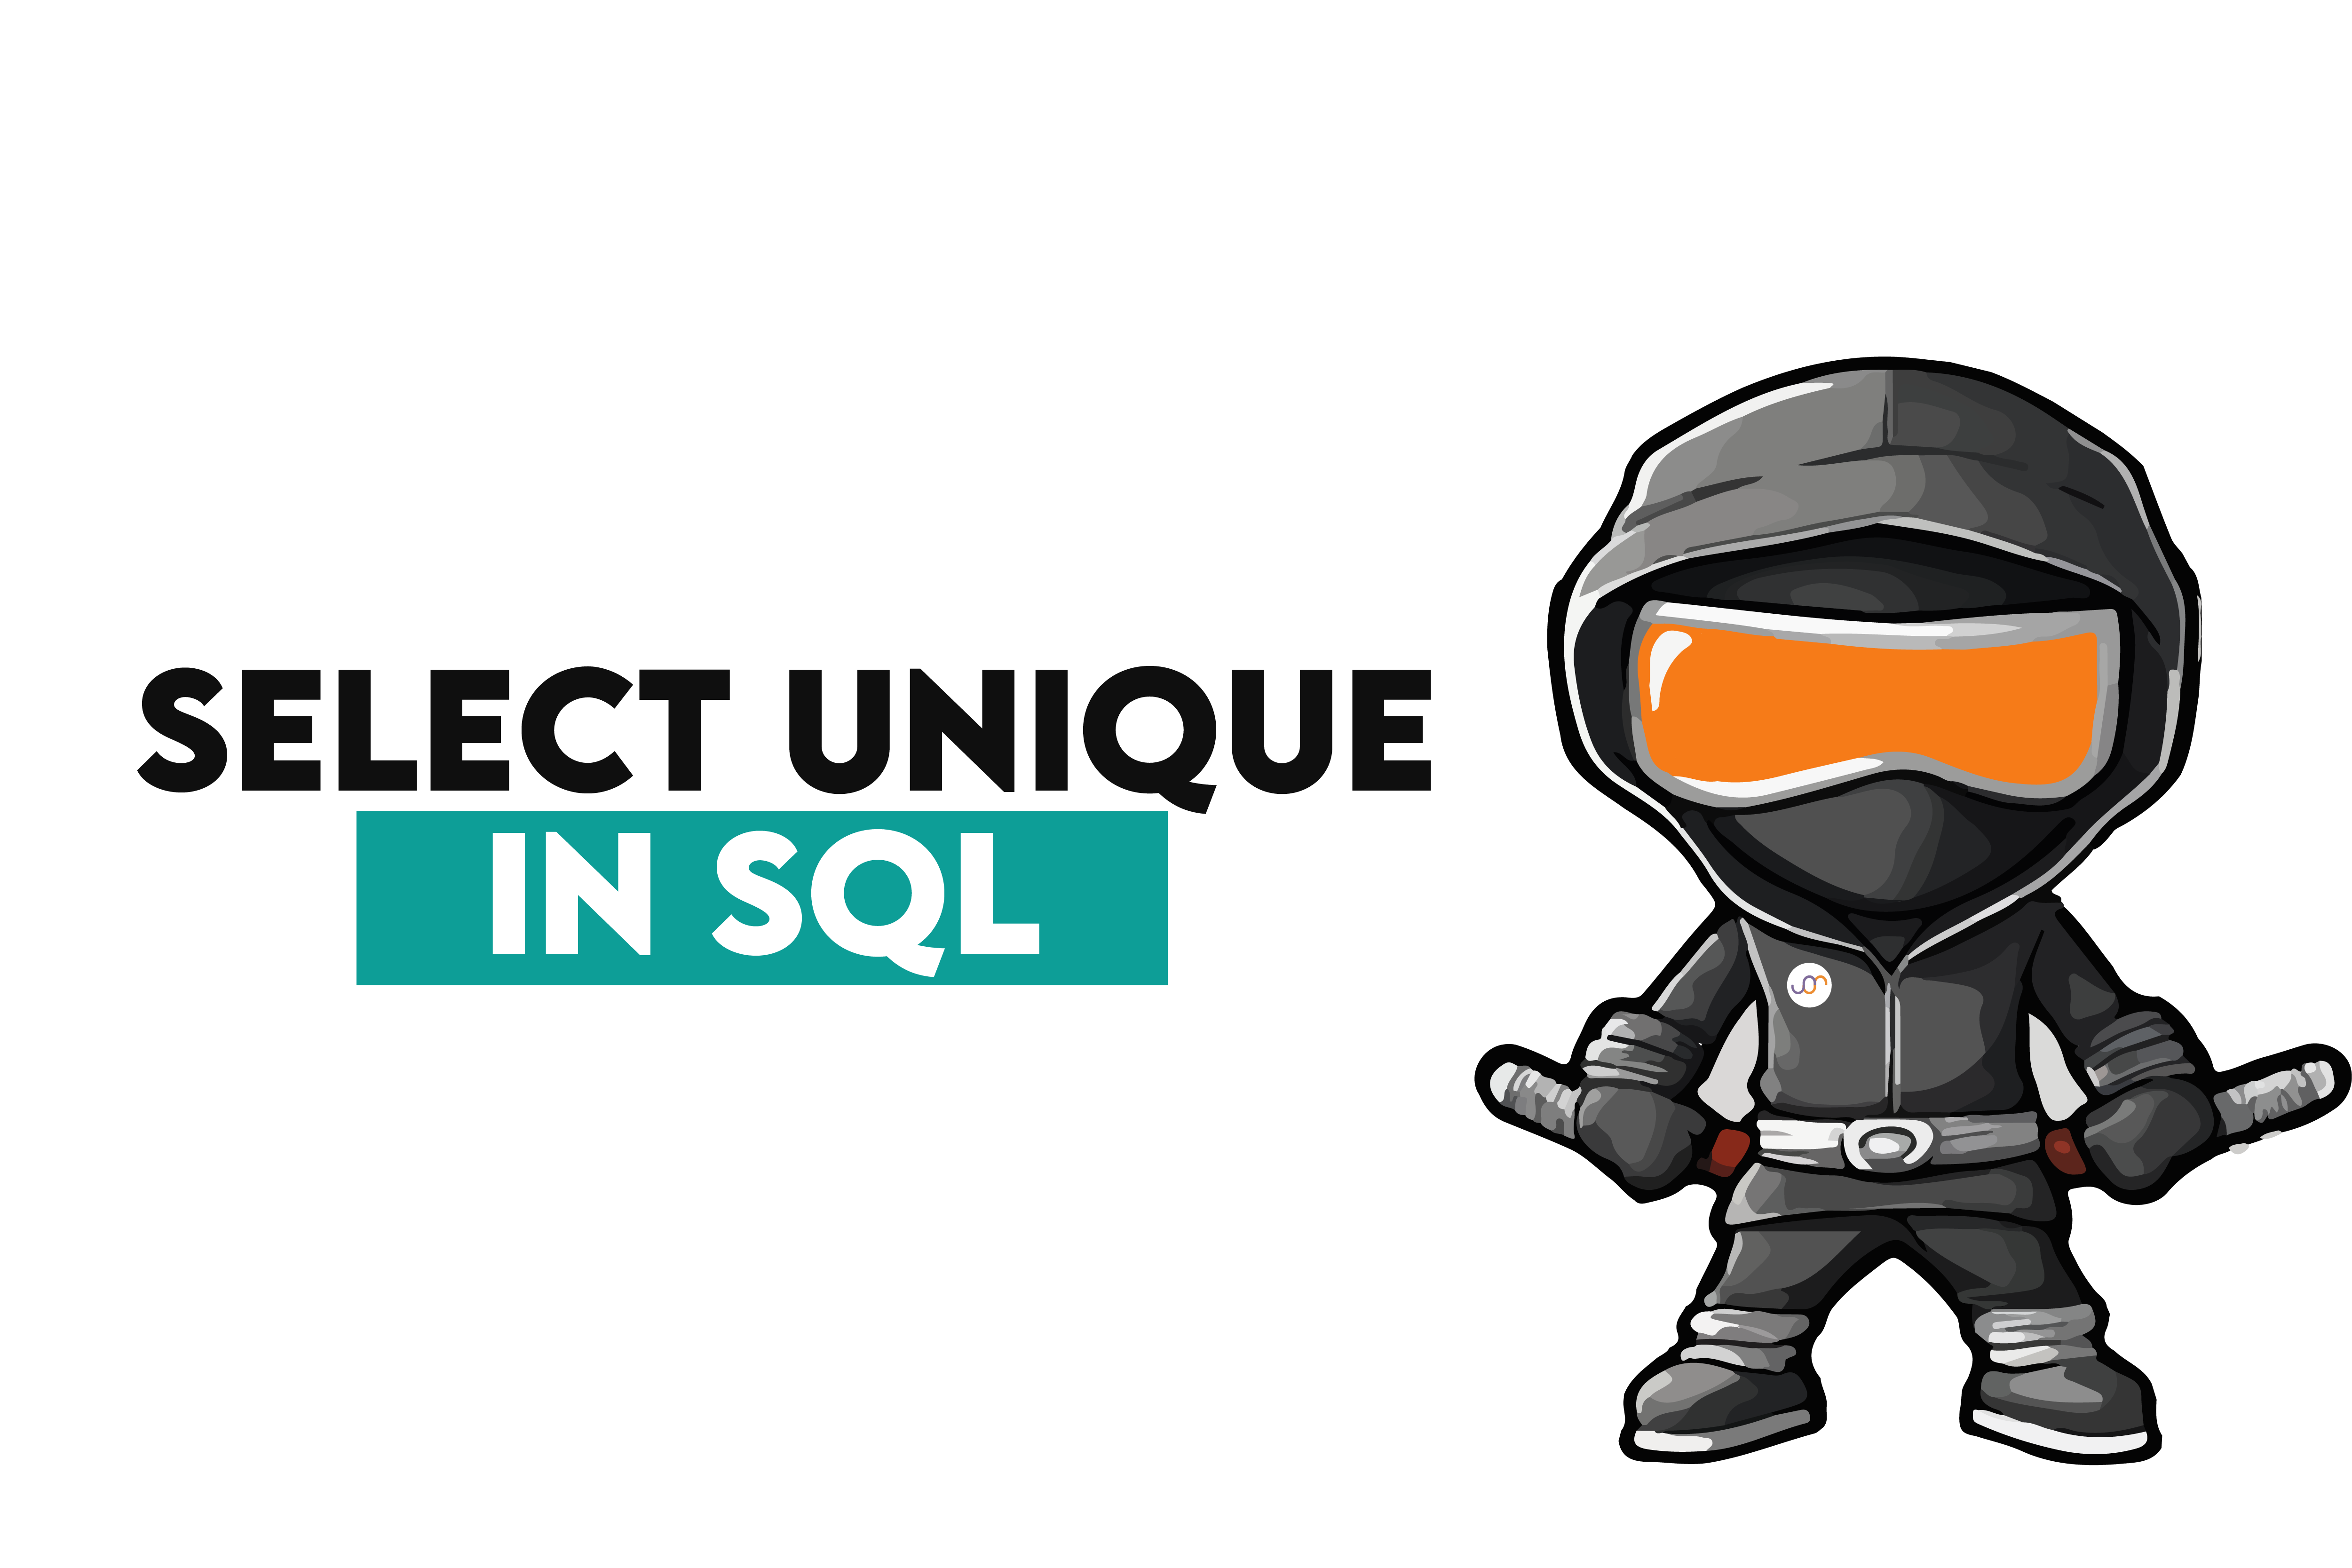 Select unique in SQL